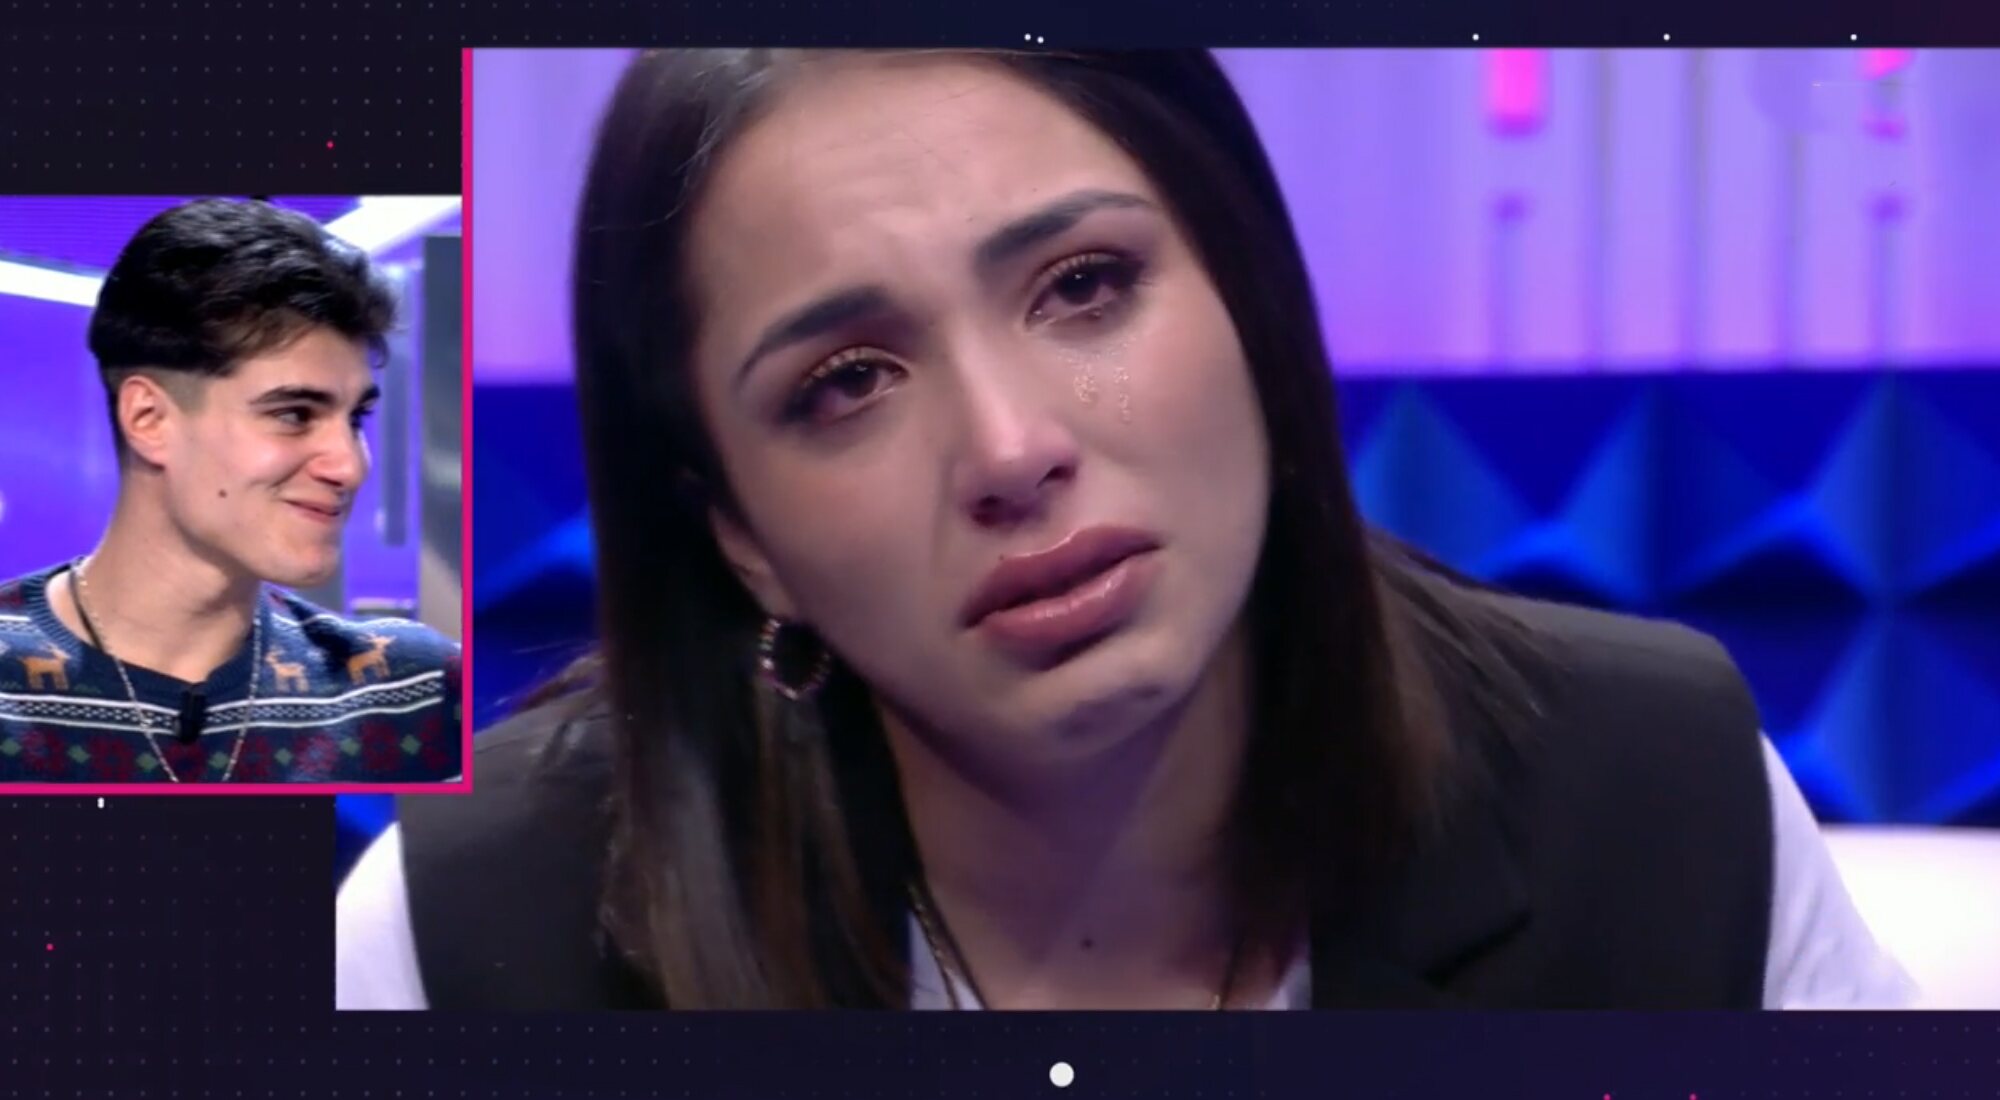 Sandra rompe a llorar tras ver un mensaje de Julen en 'Secret Story'